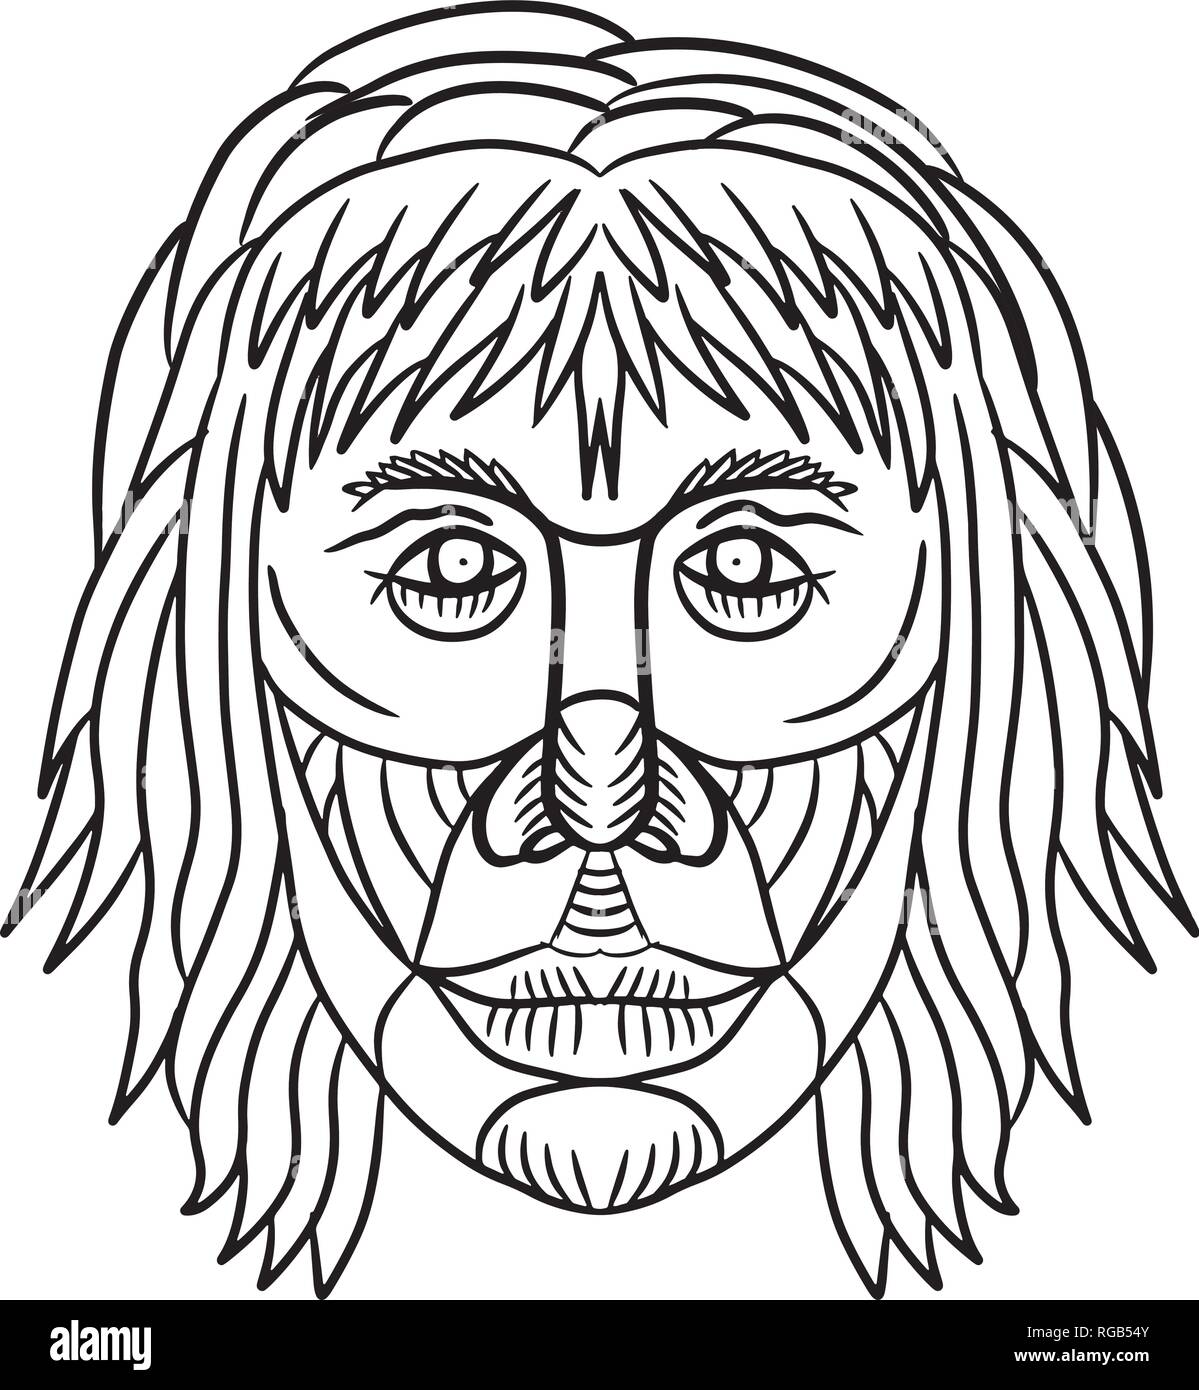 Disegno stile sketch illustrazione di un Homo habilis faccia, uno dei primi membri del genere Homo o precoce uomo primitivo se visto dalla parte anteriore su ON è Illustrazione Vettoriale